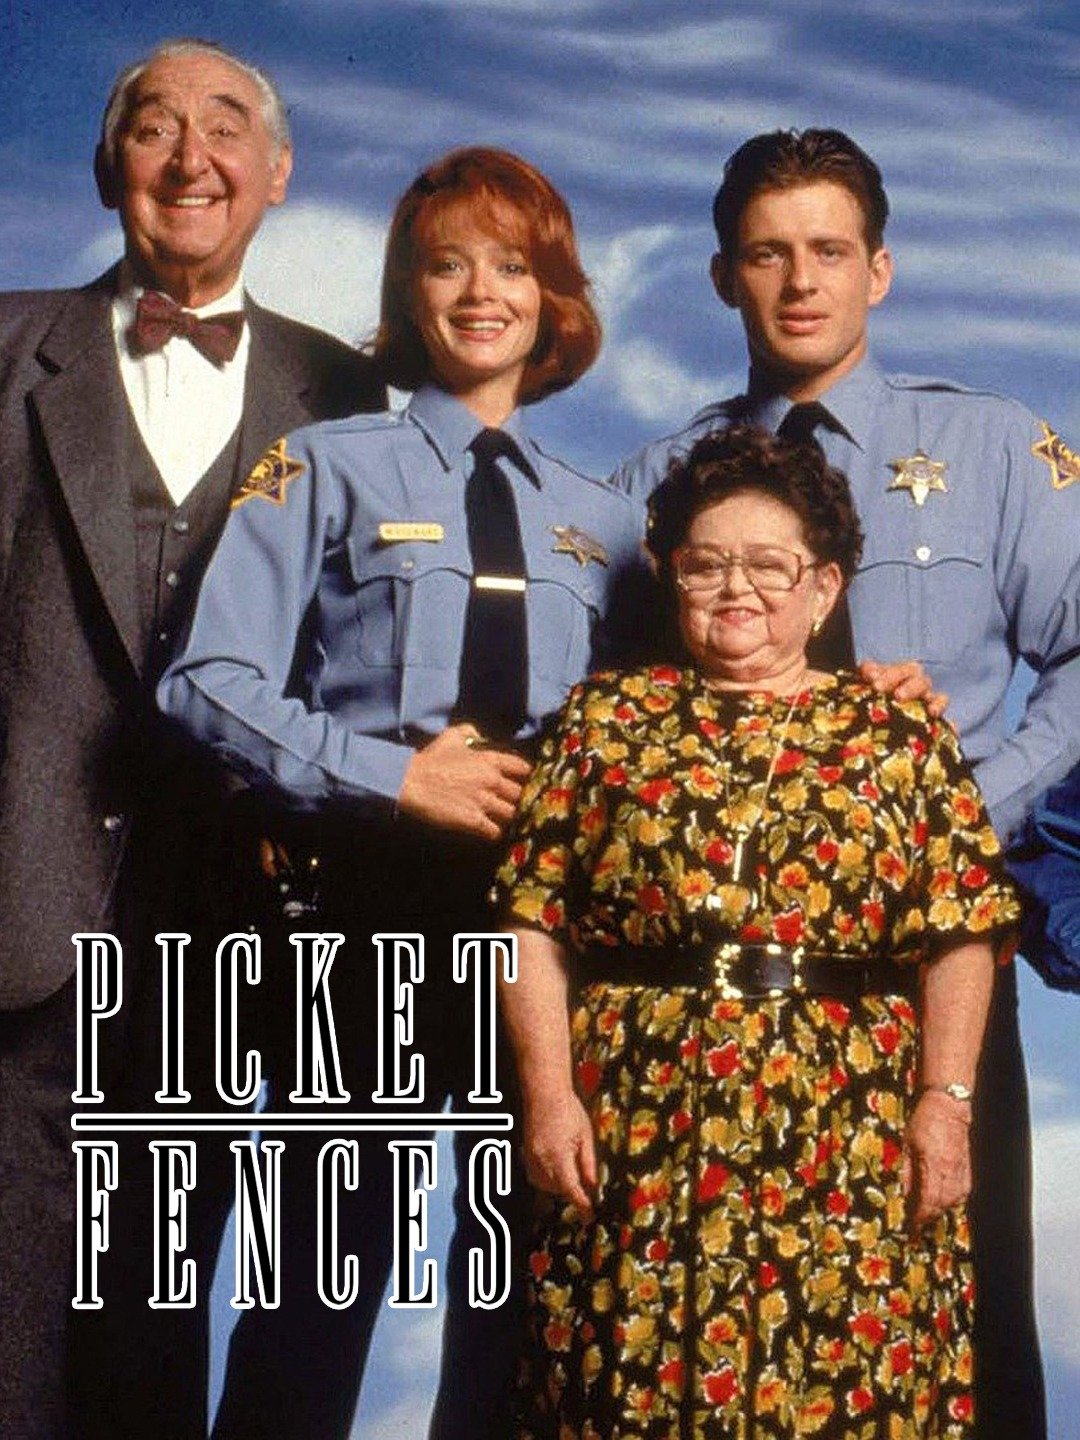 Picket Fences Season 4, Episode 9